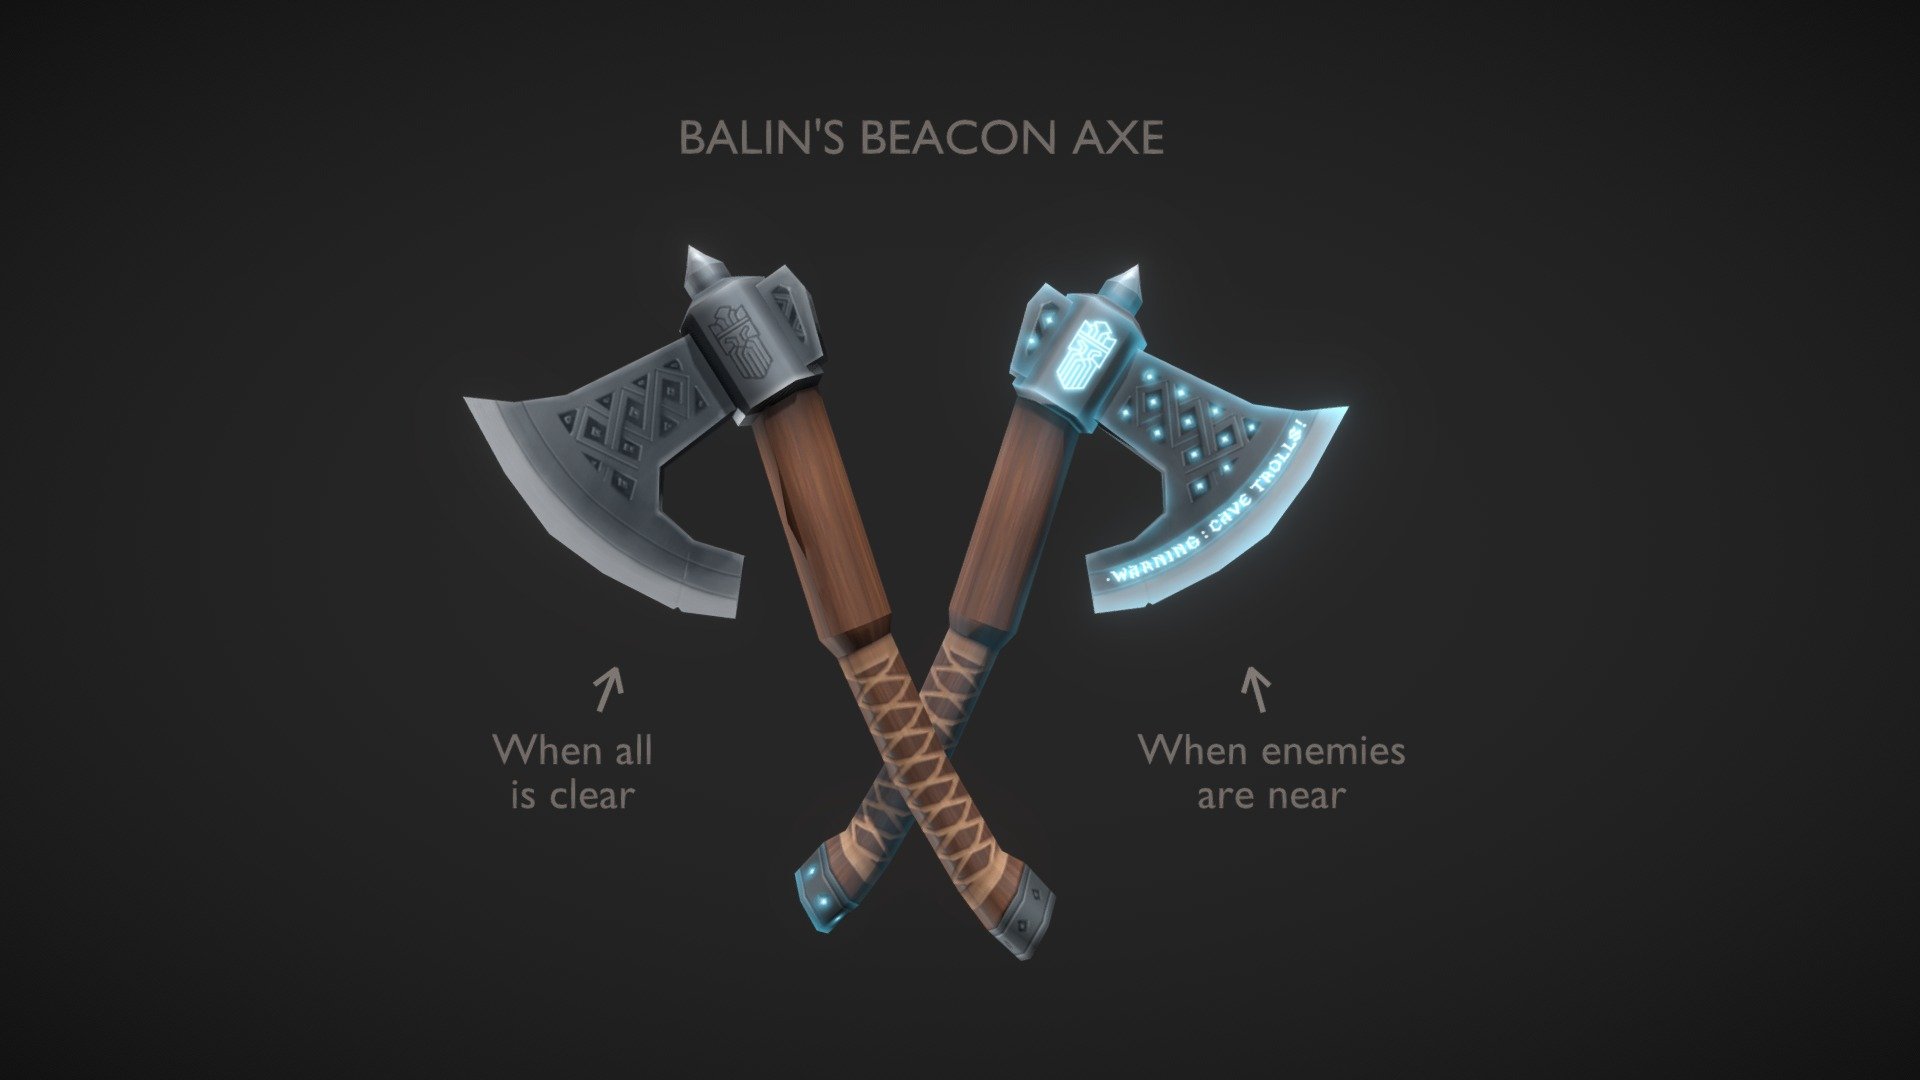 Balin's Beacon Axe